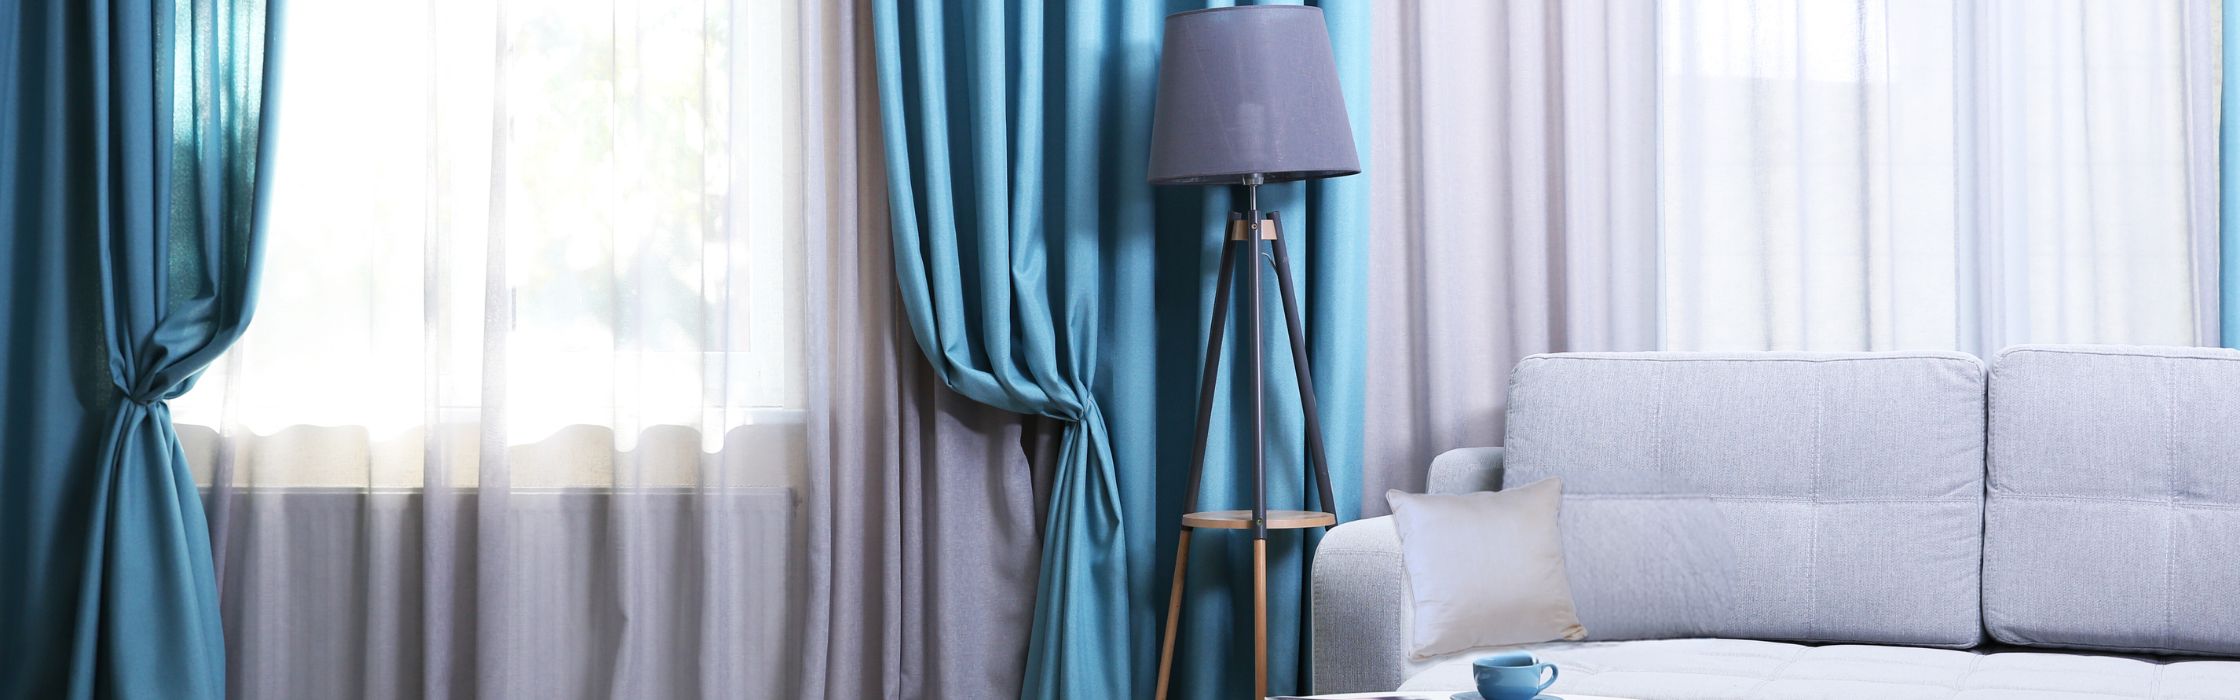 Des rideaux bleus et blanc avec canapé gris